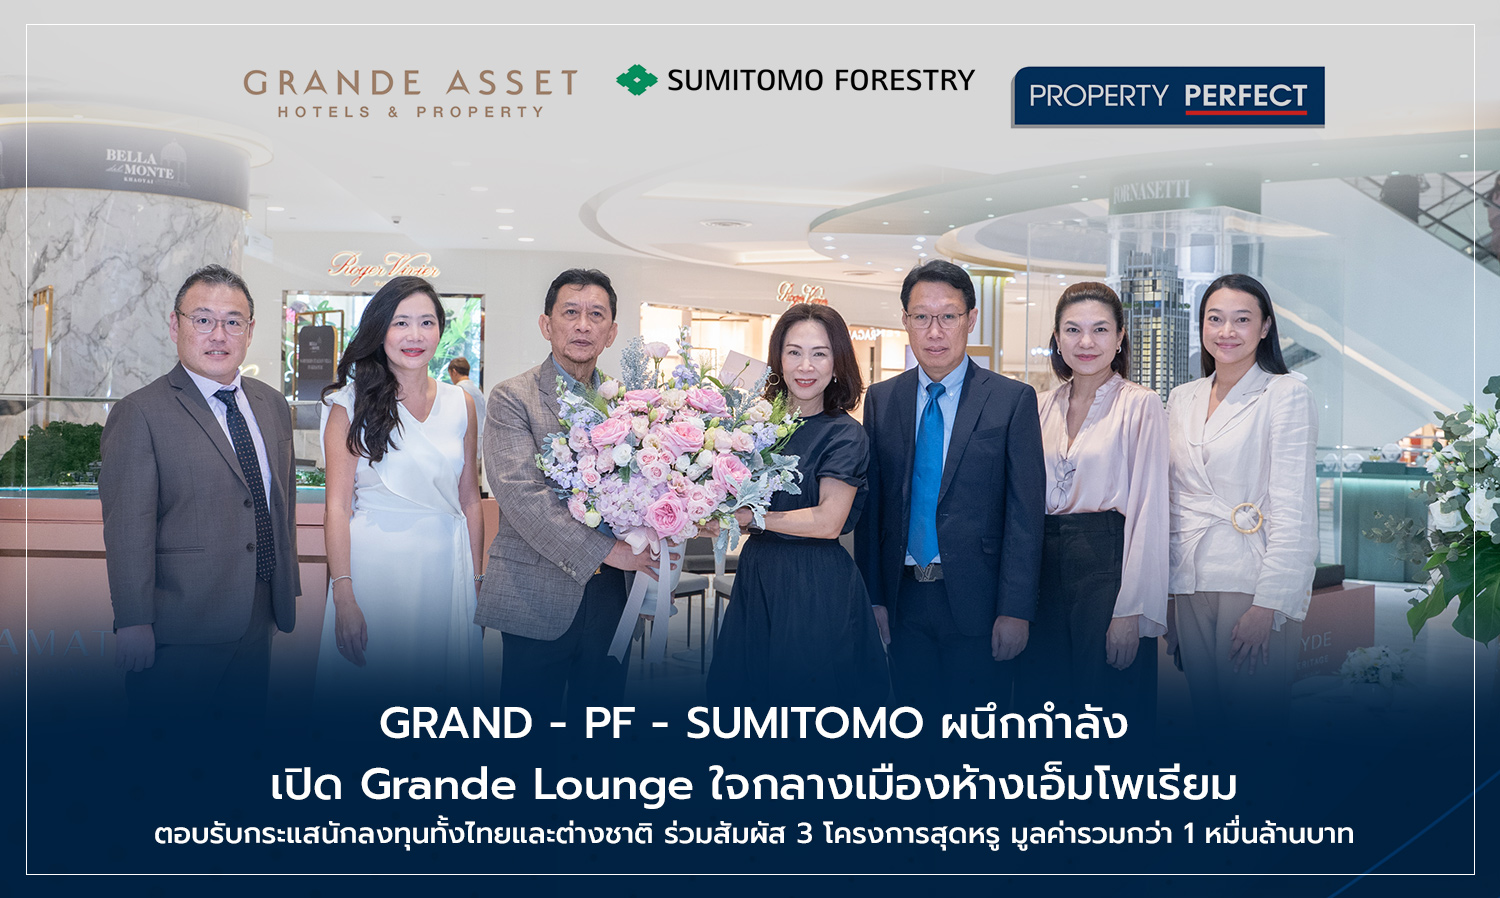 GRAND - PF - SUMITOMO ผนึกกำลัง เปิด Grande Lounge ใจกลางเมืองห้างเอ็มโพเรียม ตอบรับกระแสนักลงทุนทั้งไทยและต่างชาติ ร่วมสัมผัส 3 โครงการสุดหรู มูลค่ารวมกว่า 1 หมื่นล้านบาท